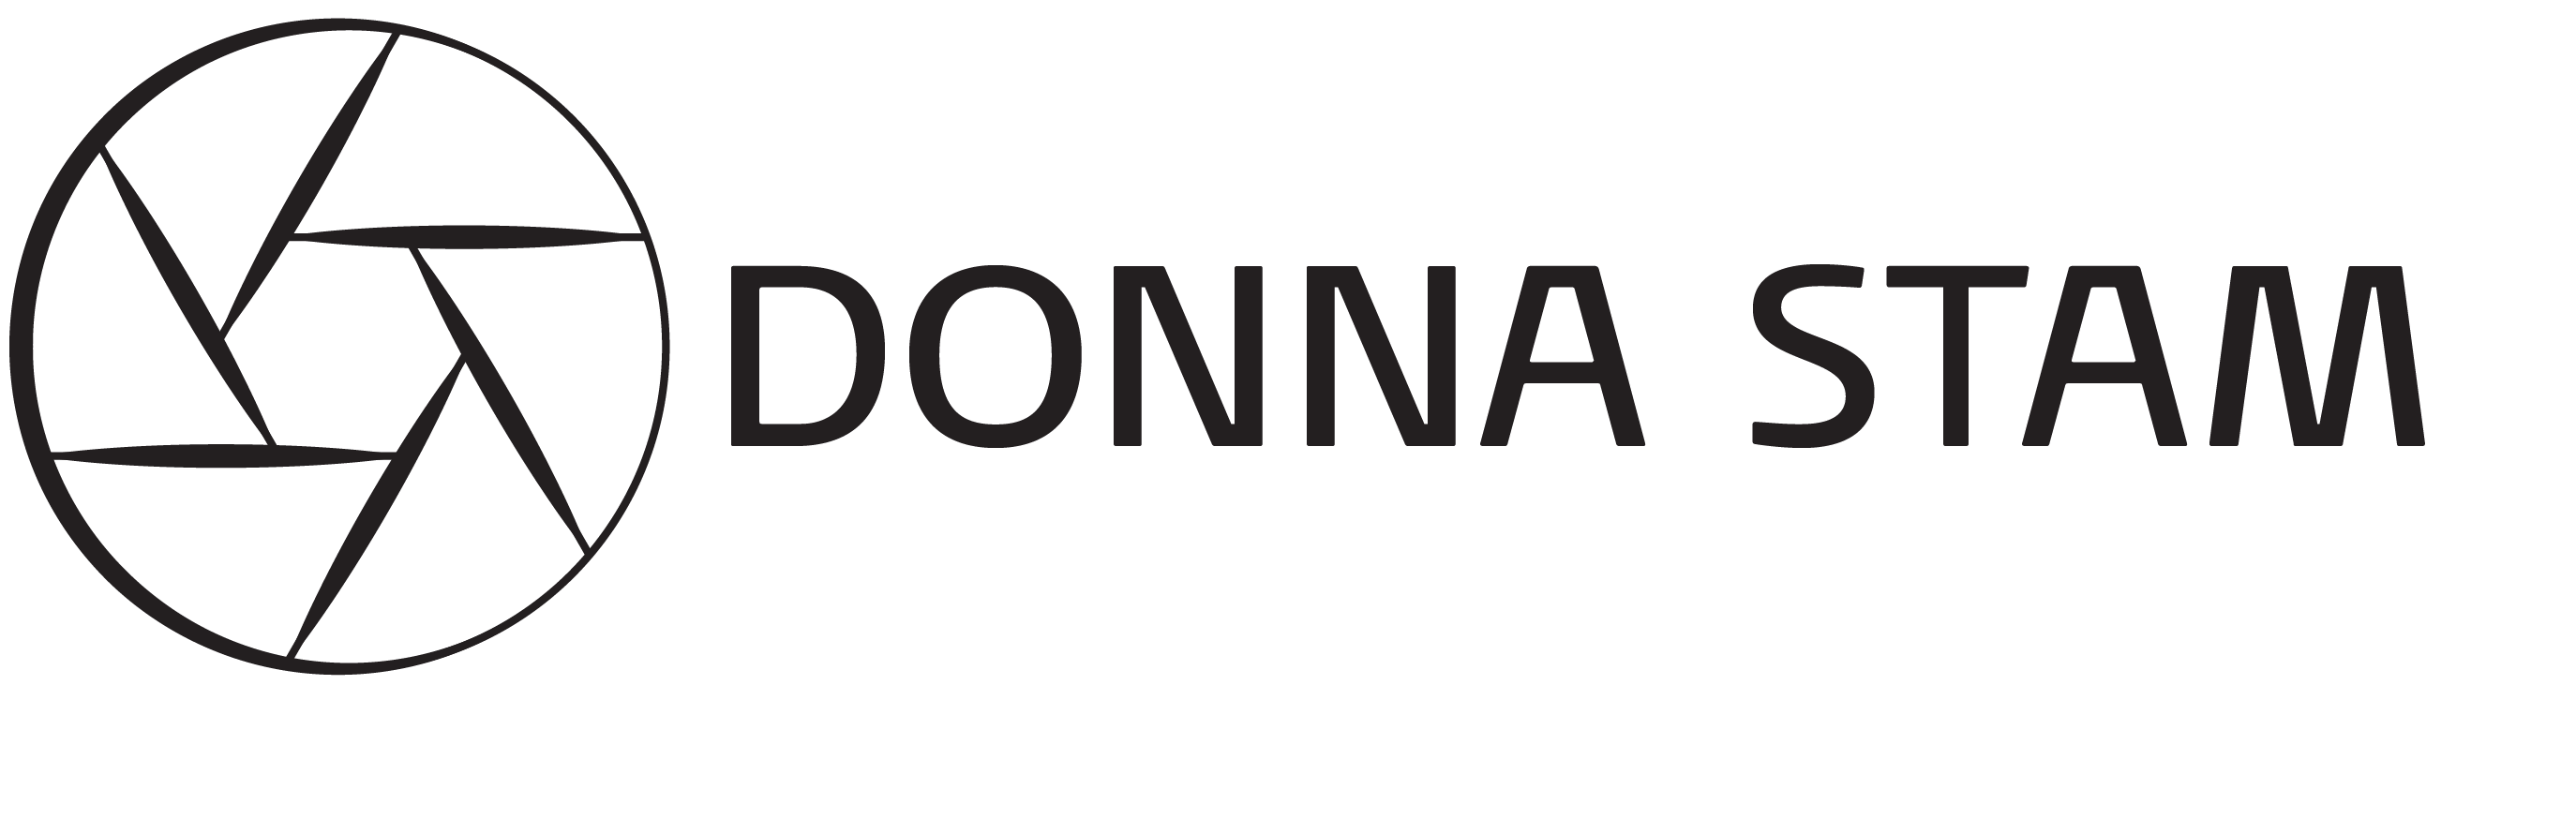 Donna Stam